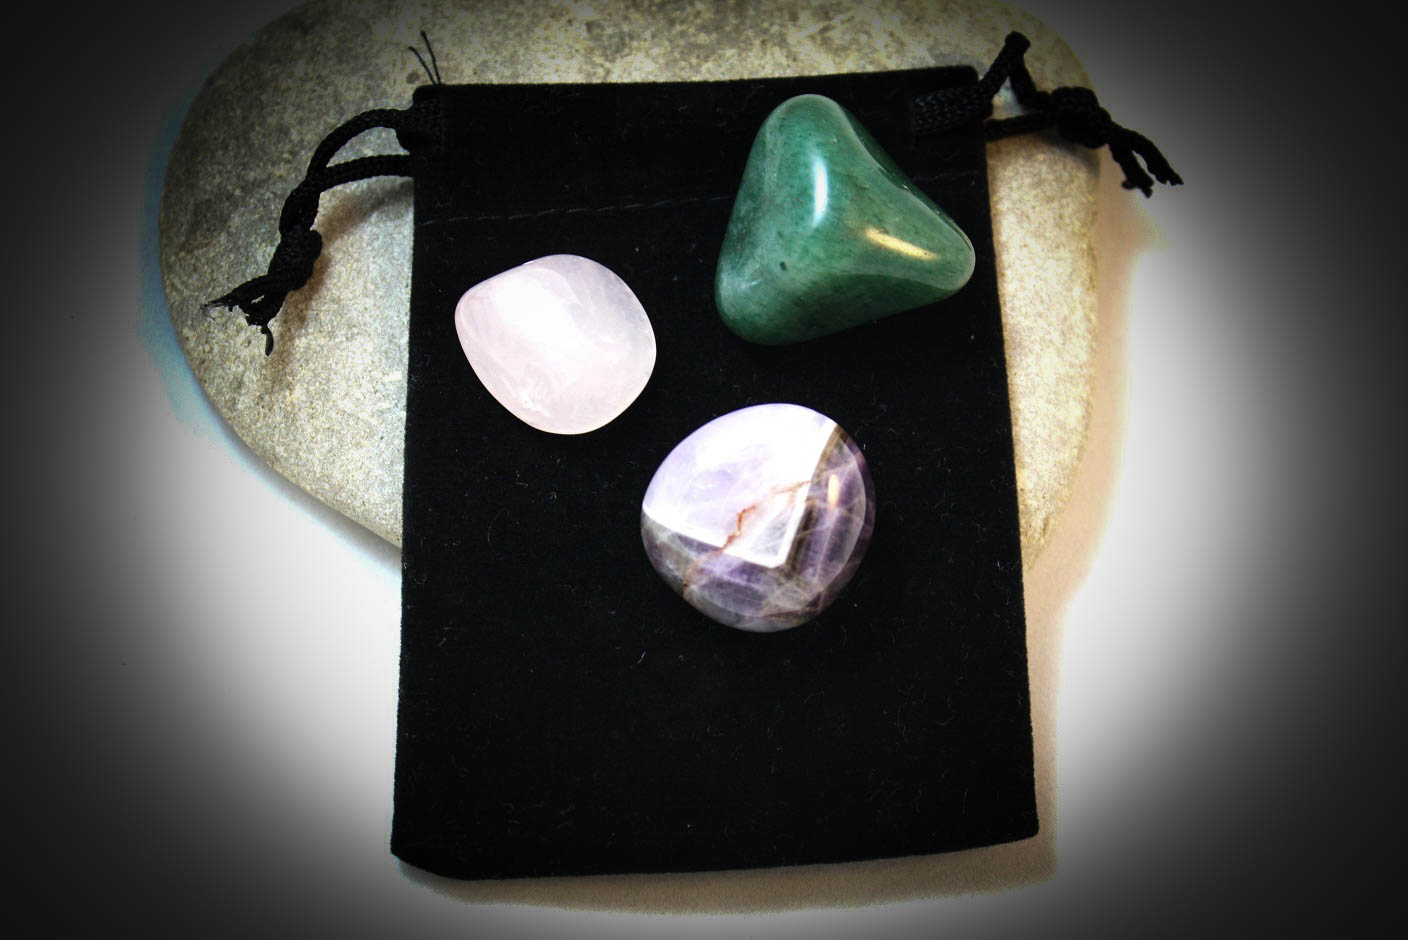  Natural stones amethyst, rose quartz and aventurine